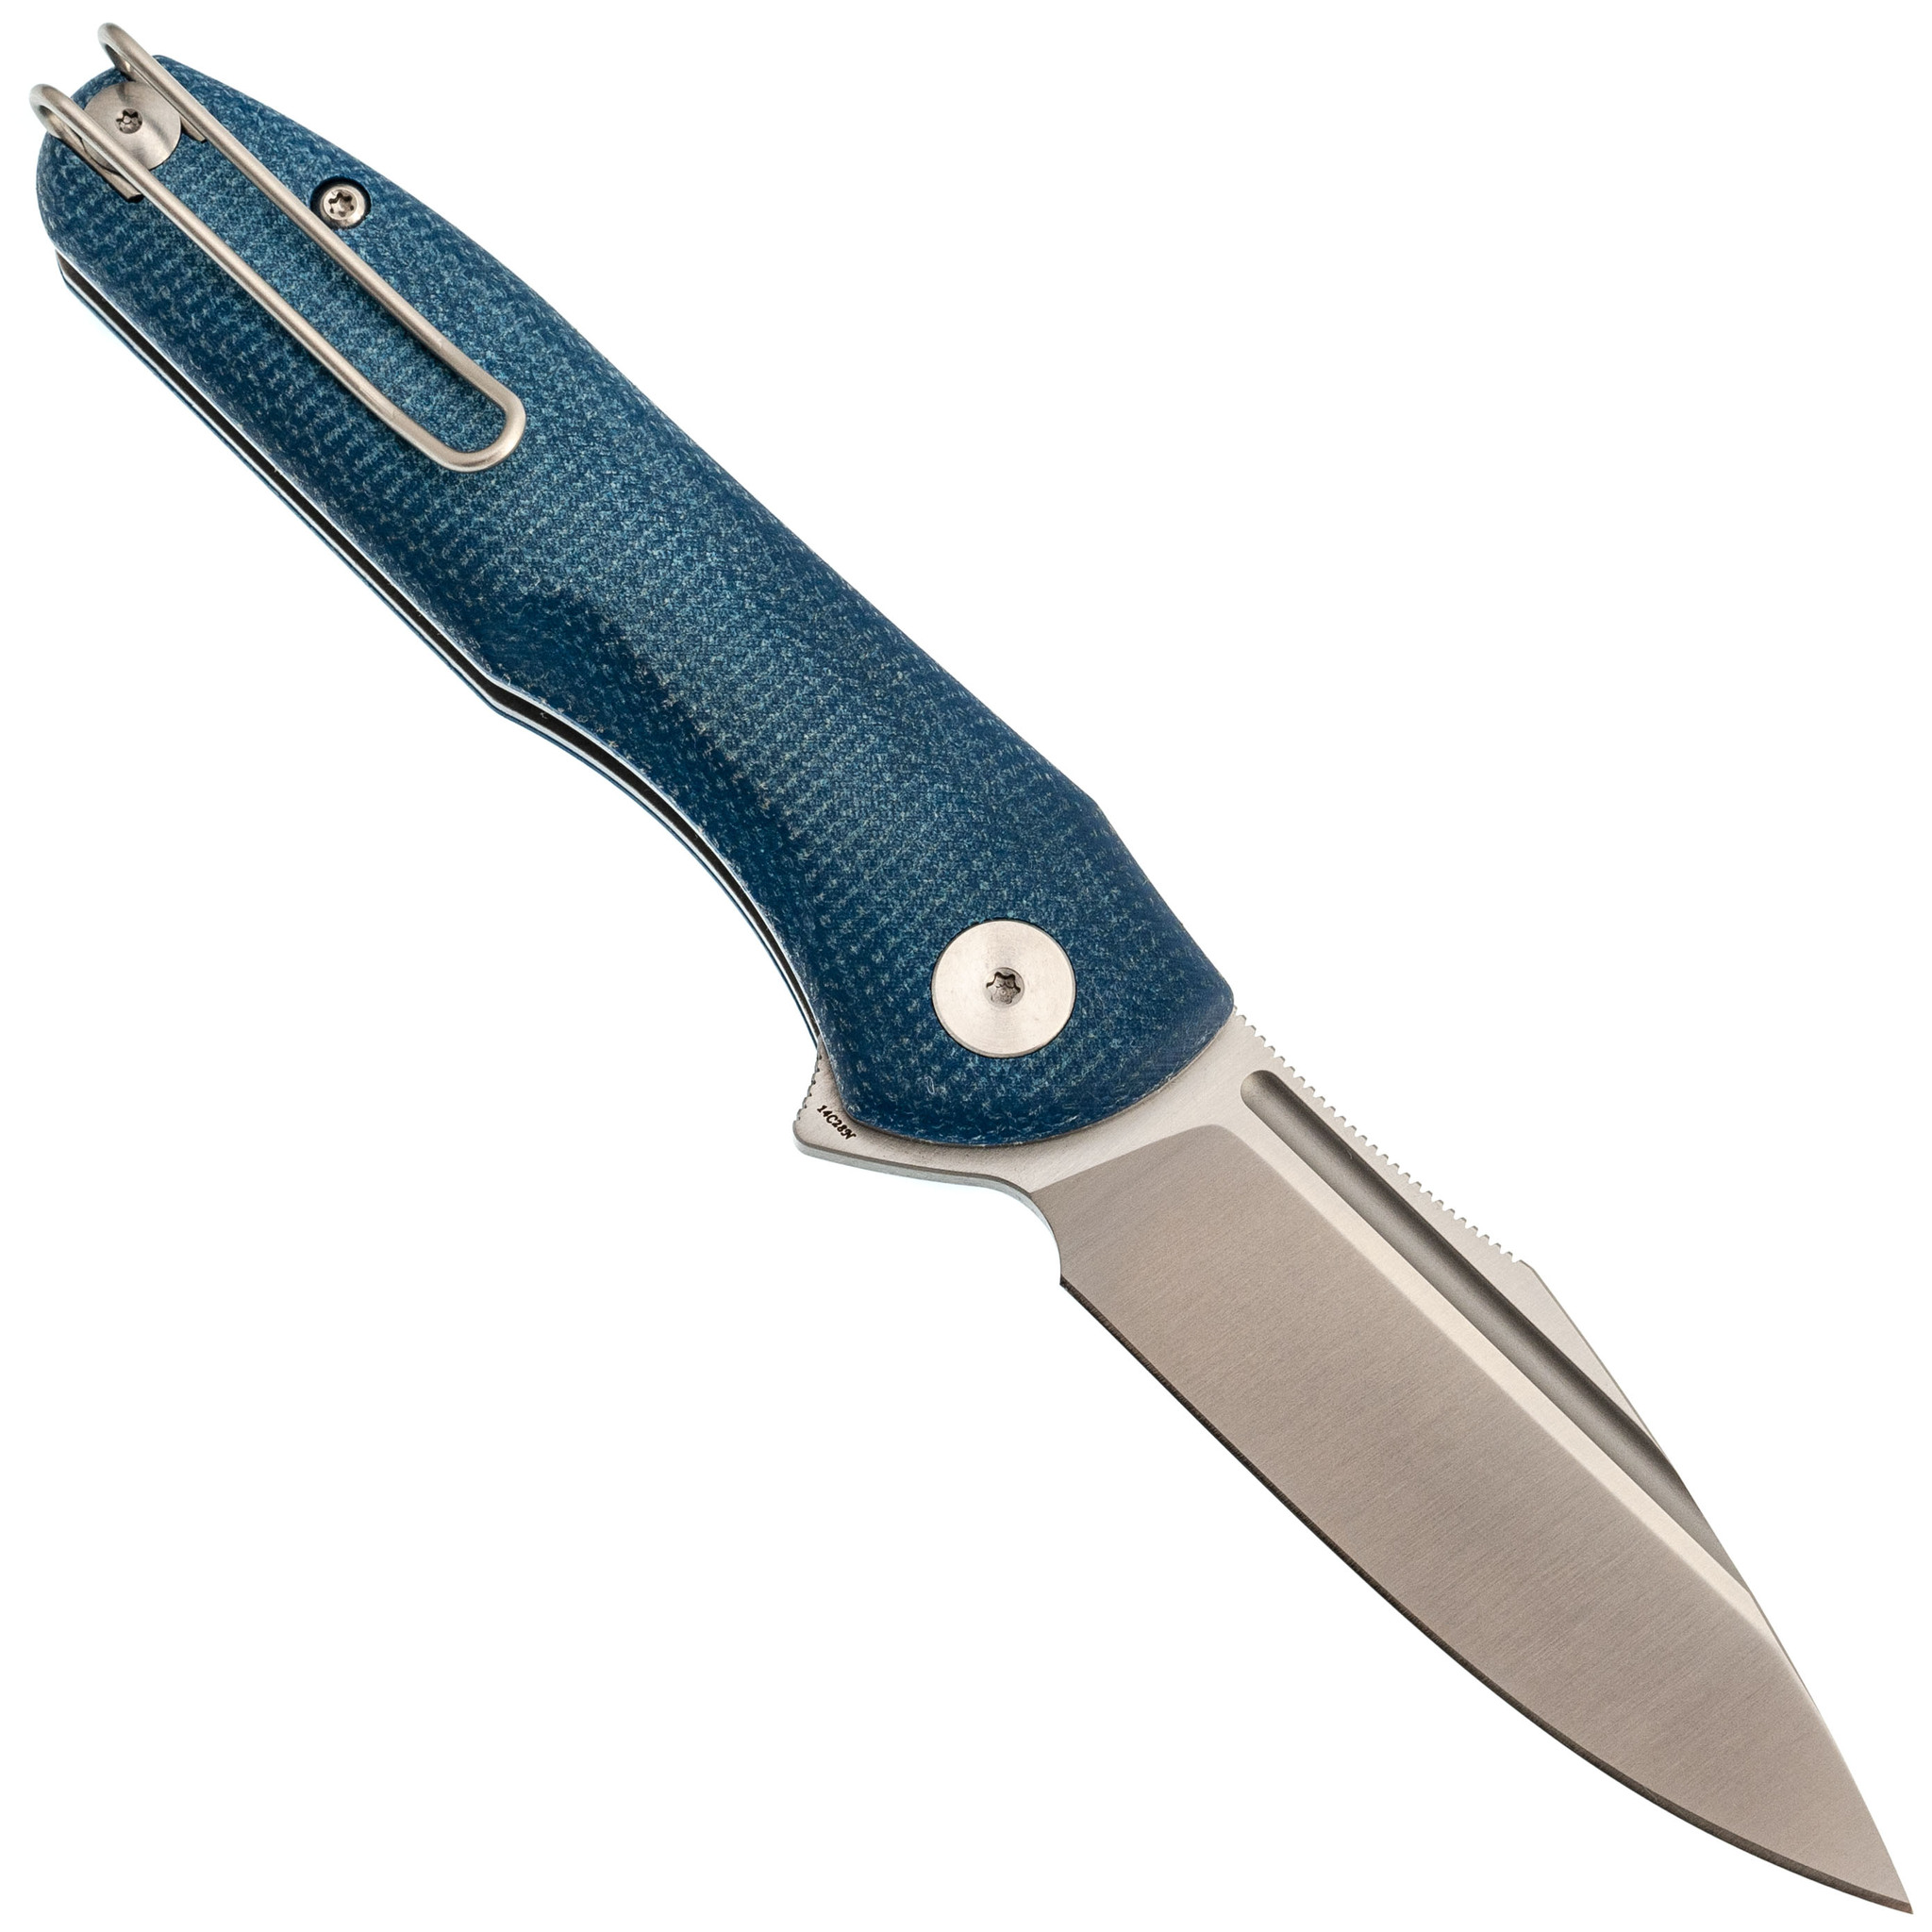 Складной нож Trivisa Antliae-04LMW, сталь 14C28N, рукоять микарта, синий - фото 3